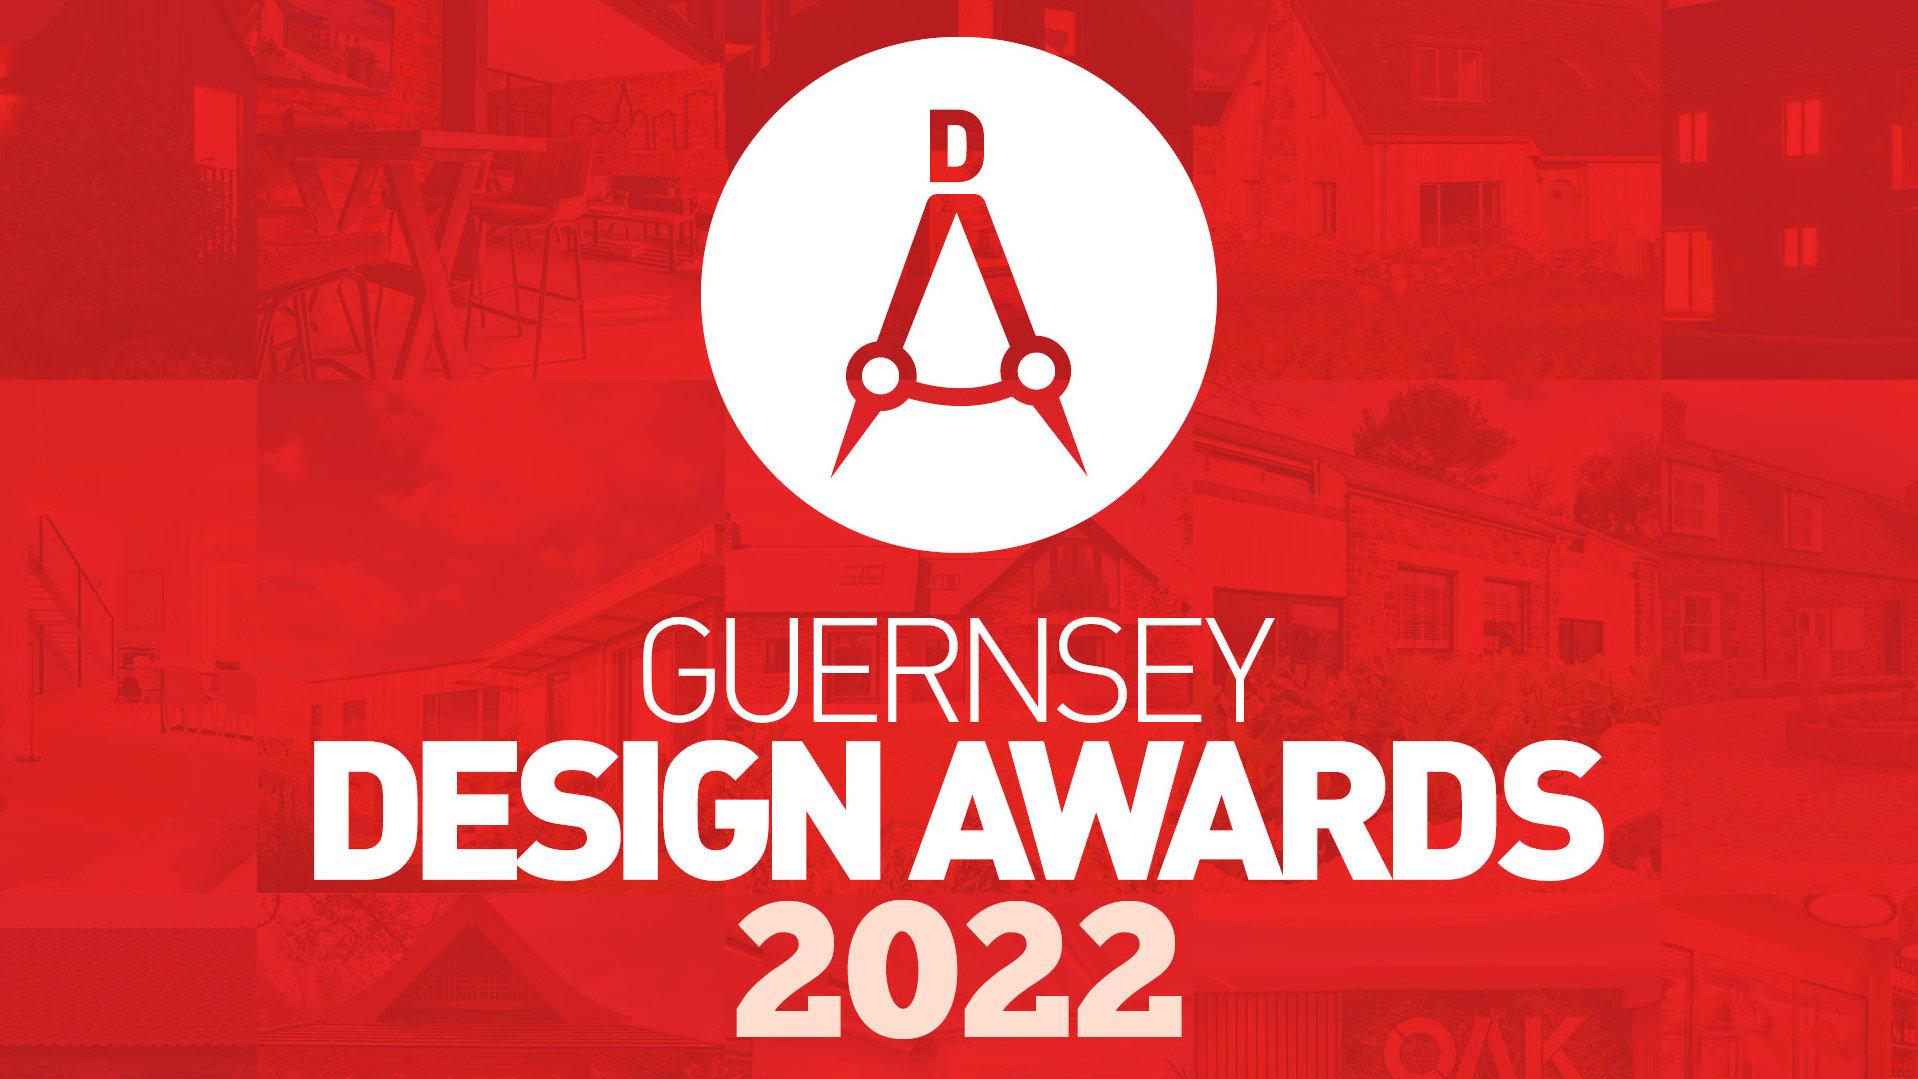 Guernsey Design awards 2022